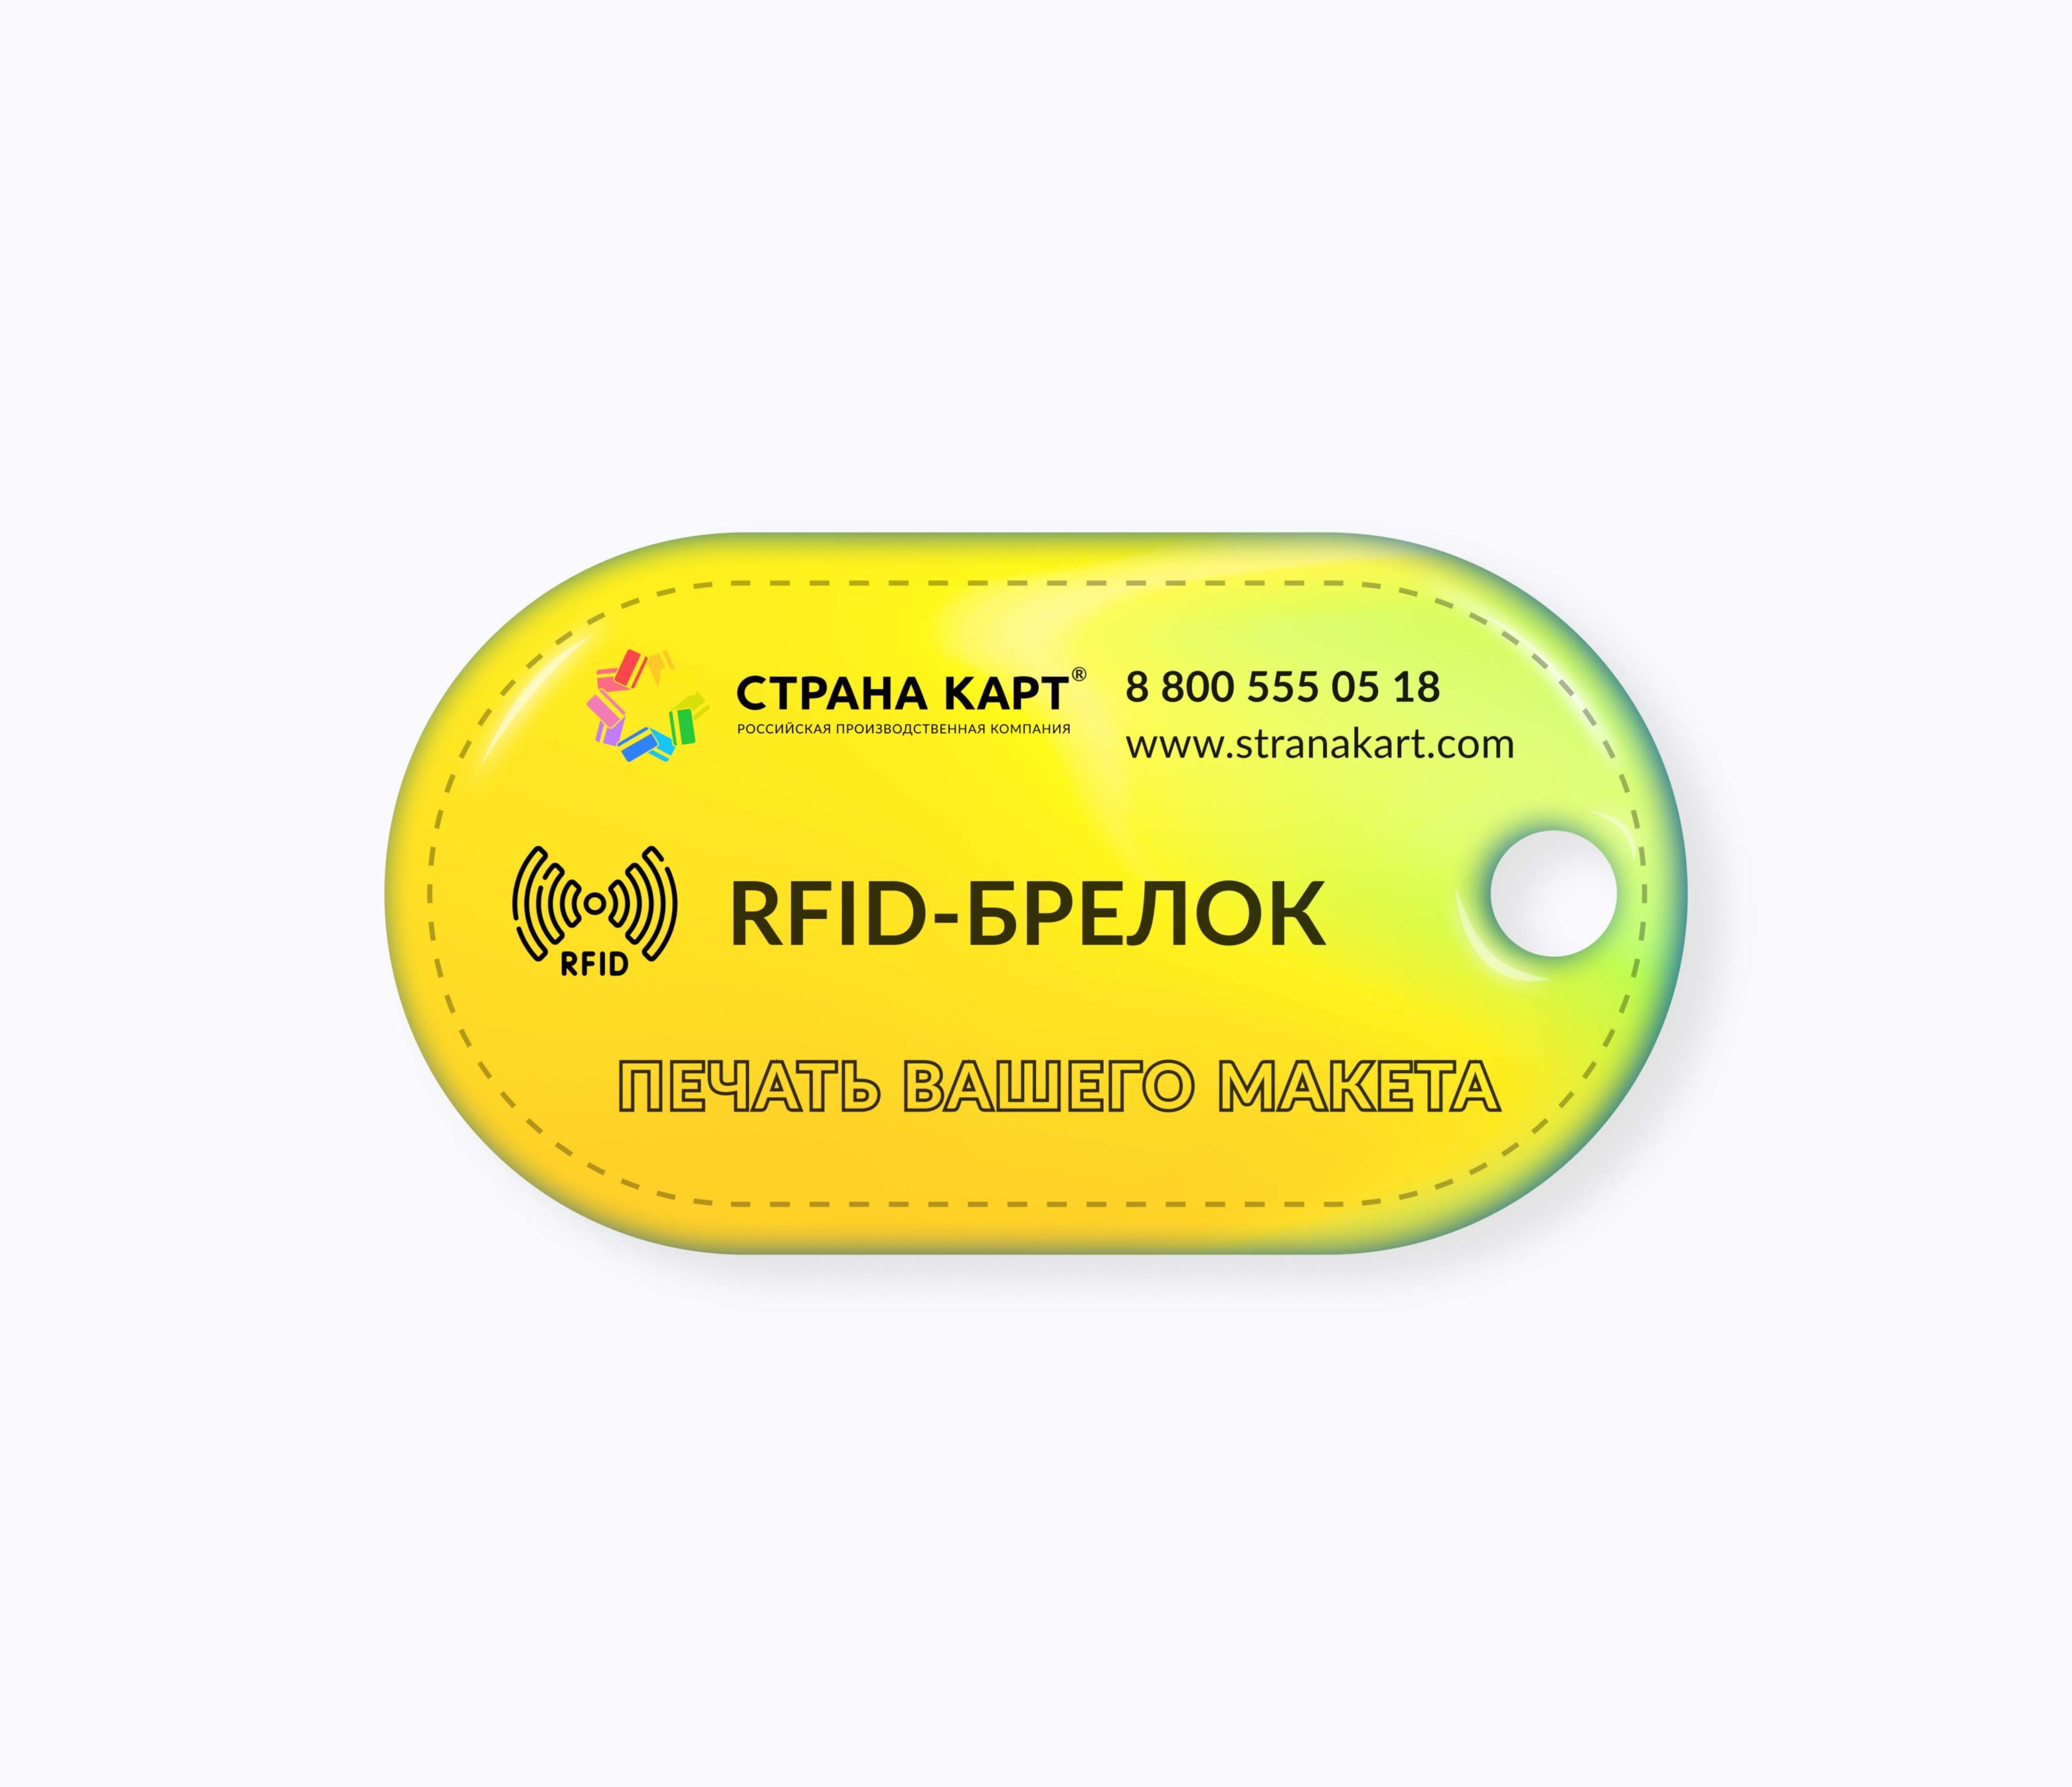 Овальные RFID-брелоки NEOKEY® с чипом для батутных парков RFID-брелоки NEOKEY® с чипом для батутных парков